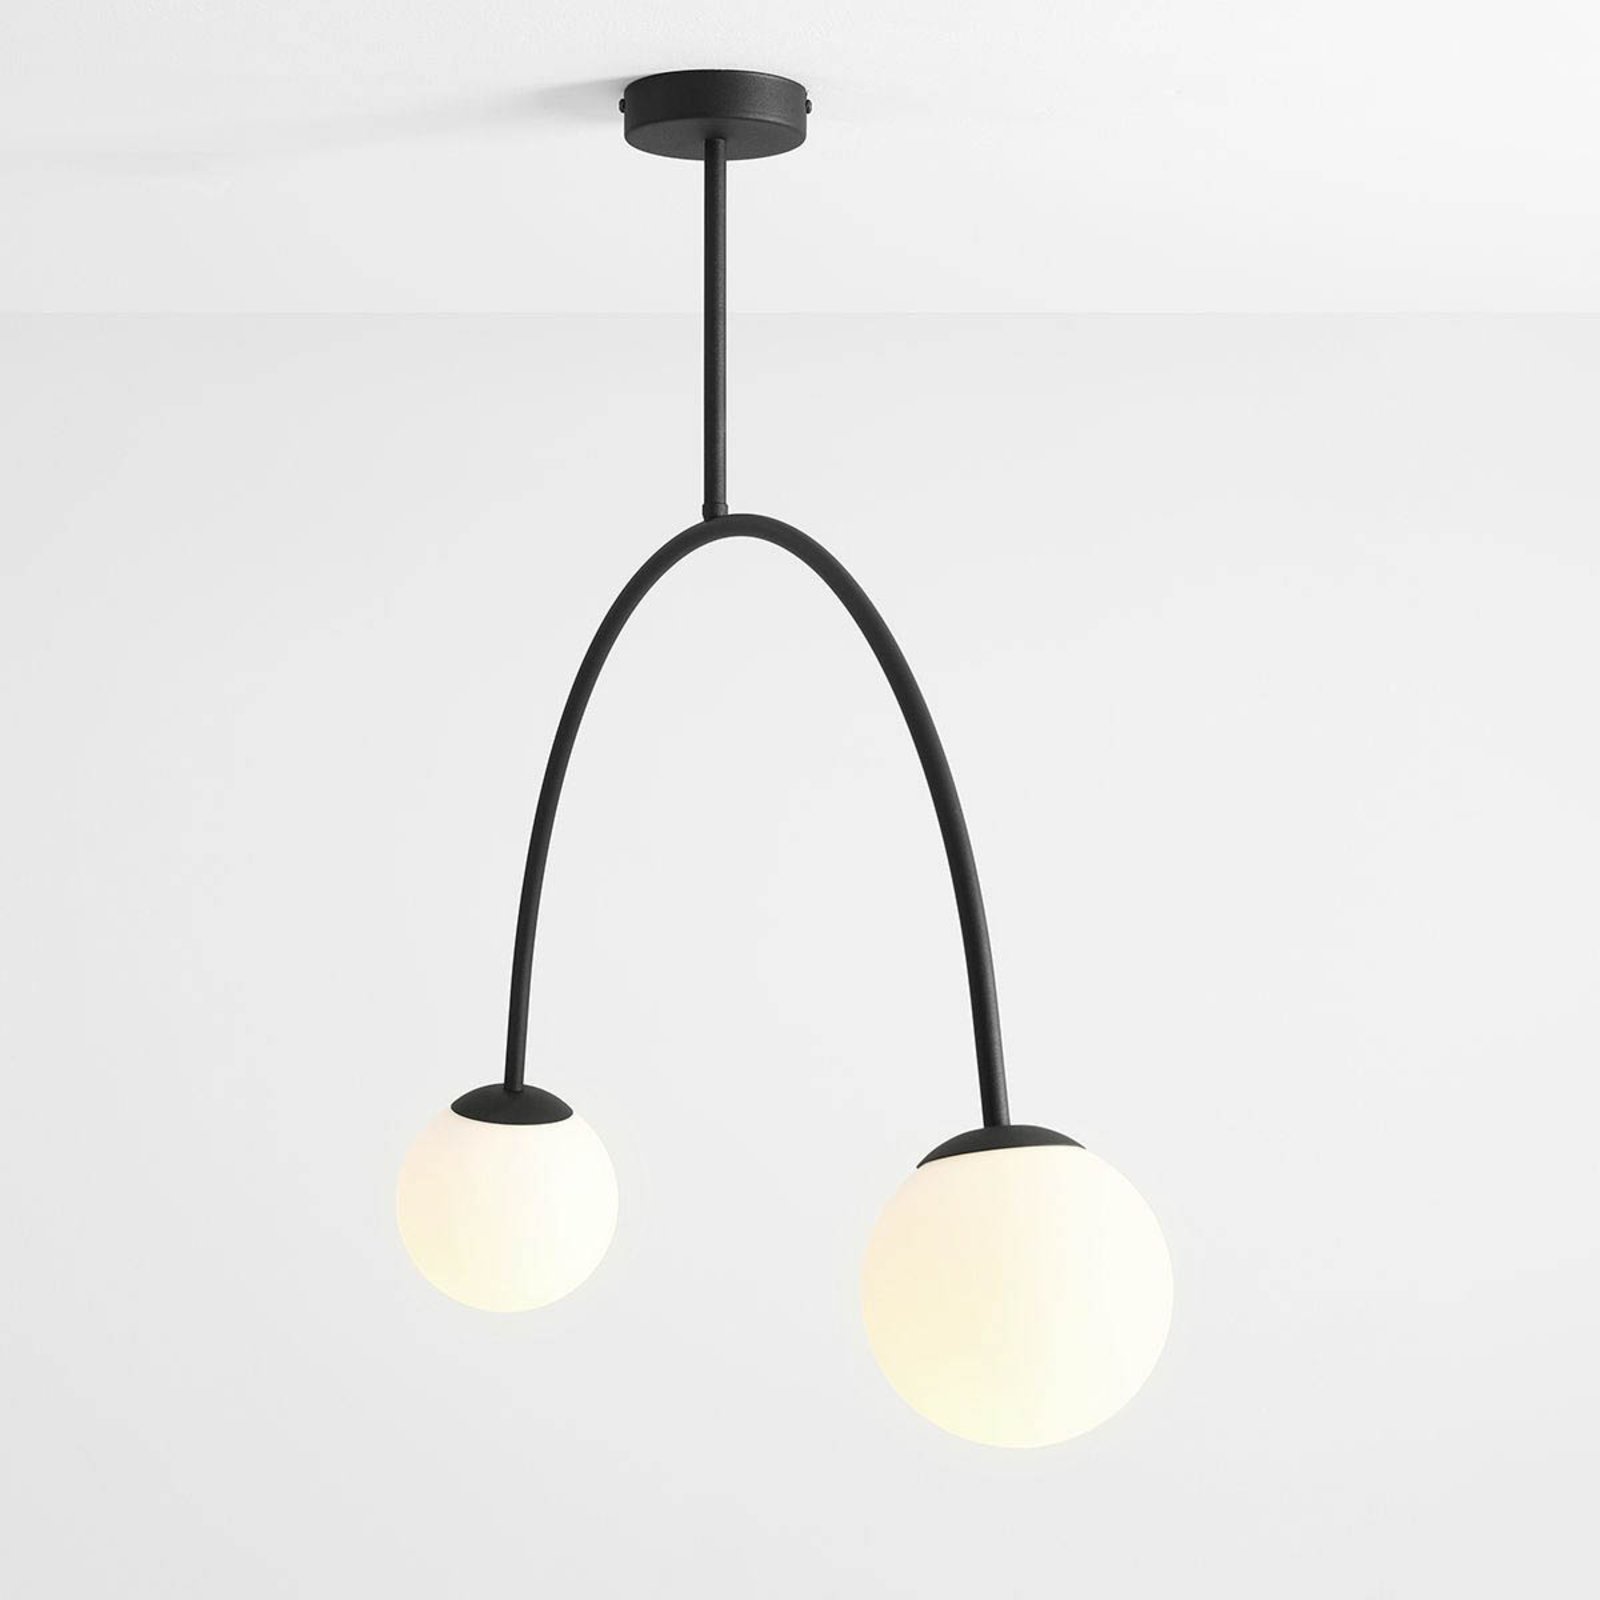 Deckenlampe Alison, schwarz/weiß, 2-flammig, 84 cm